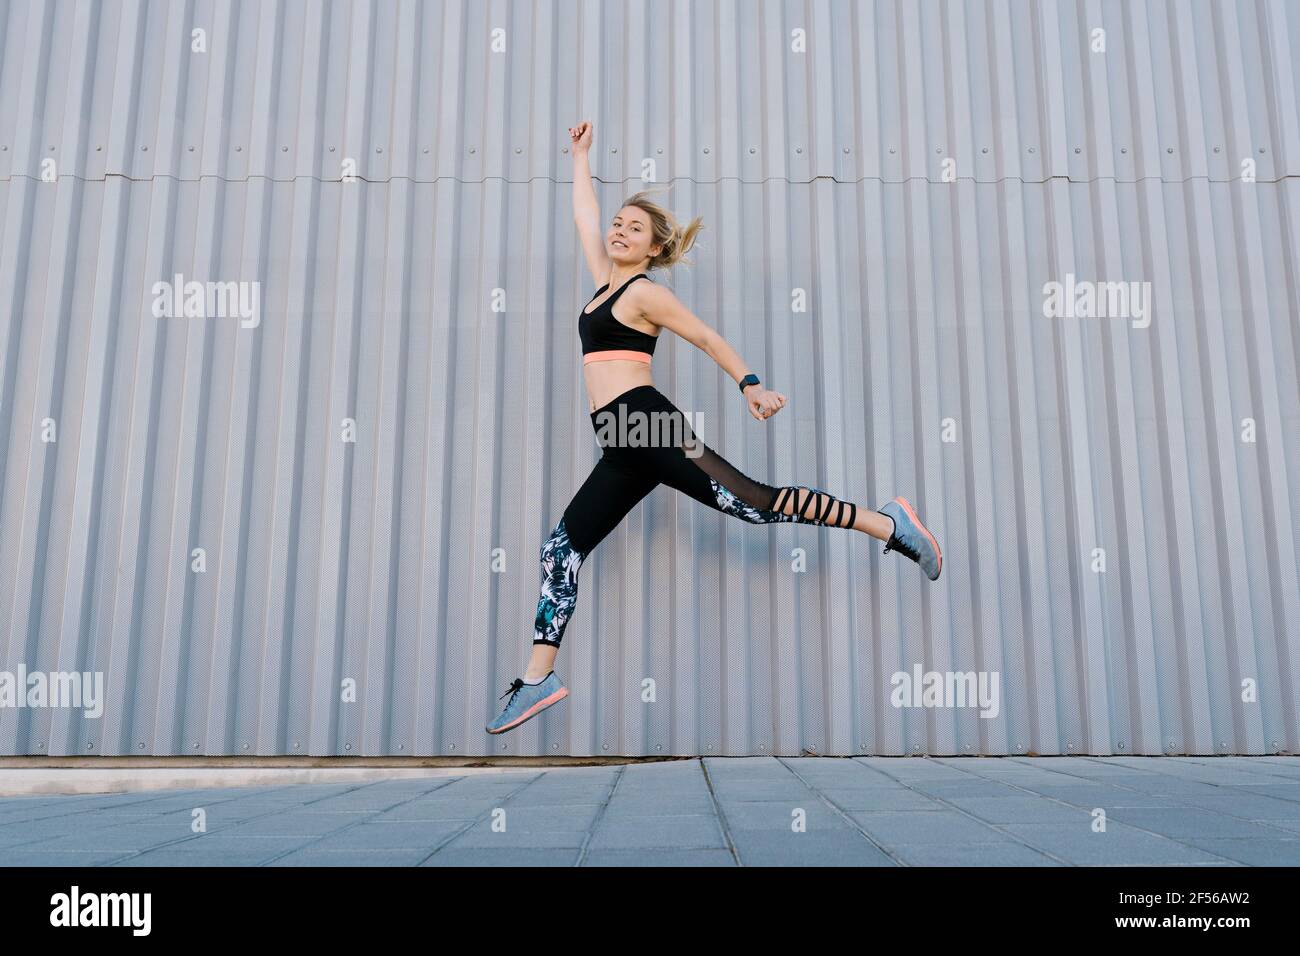 Unbeschwerte weibliche Sportlerin, die beim Sporttraining an der Wand springt Stockfoto